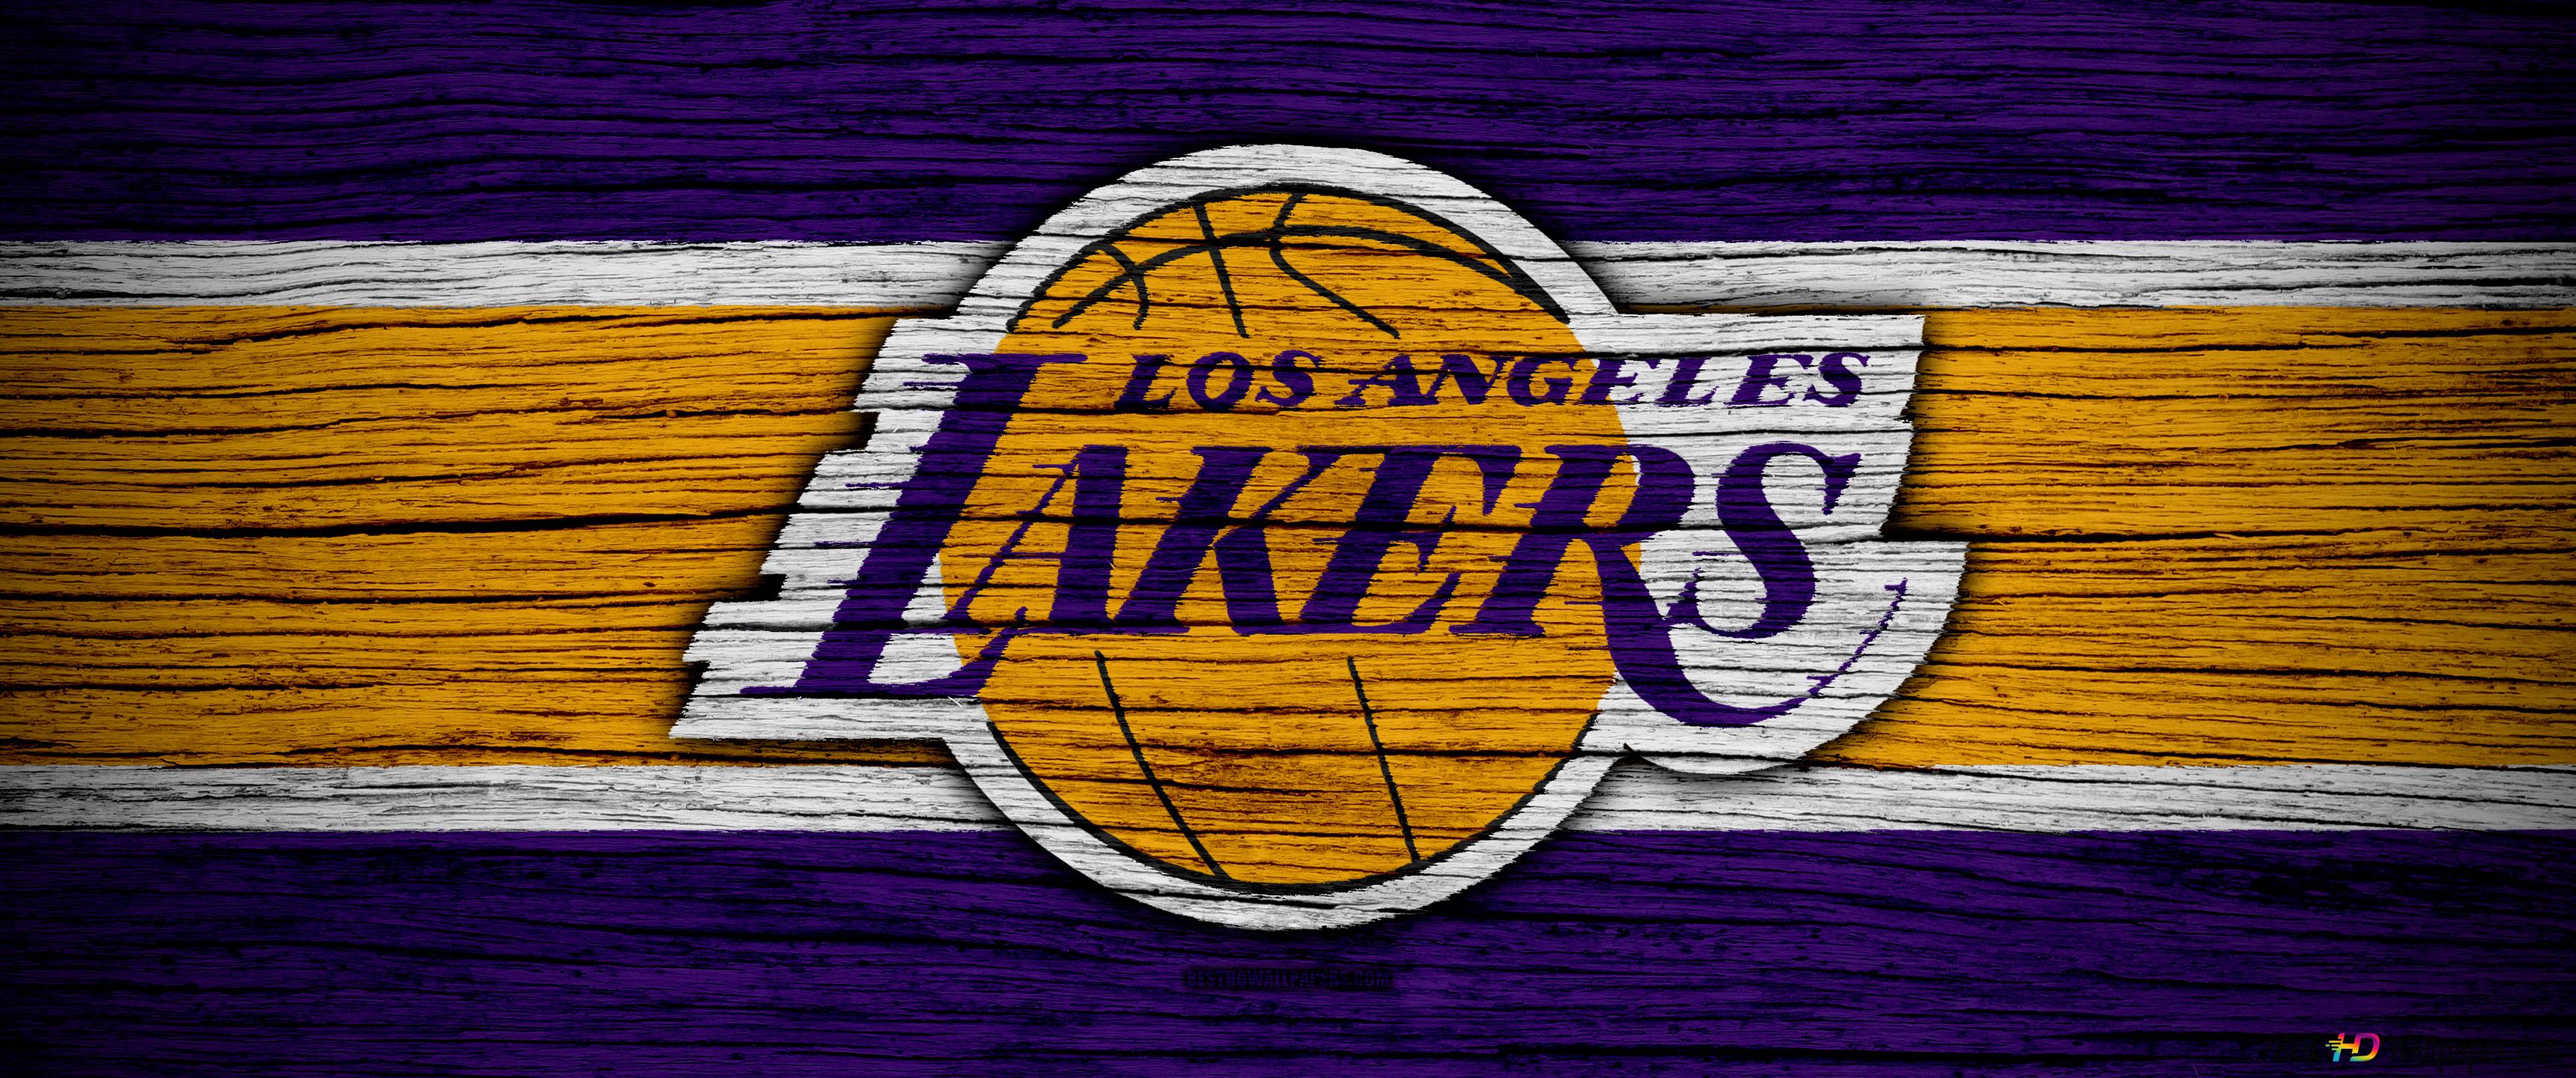 LA Lakers Logo 4K wallpaper download